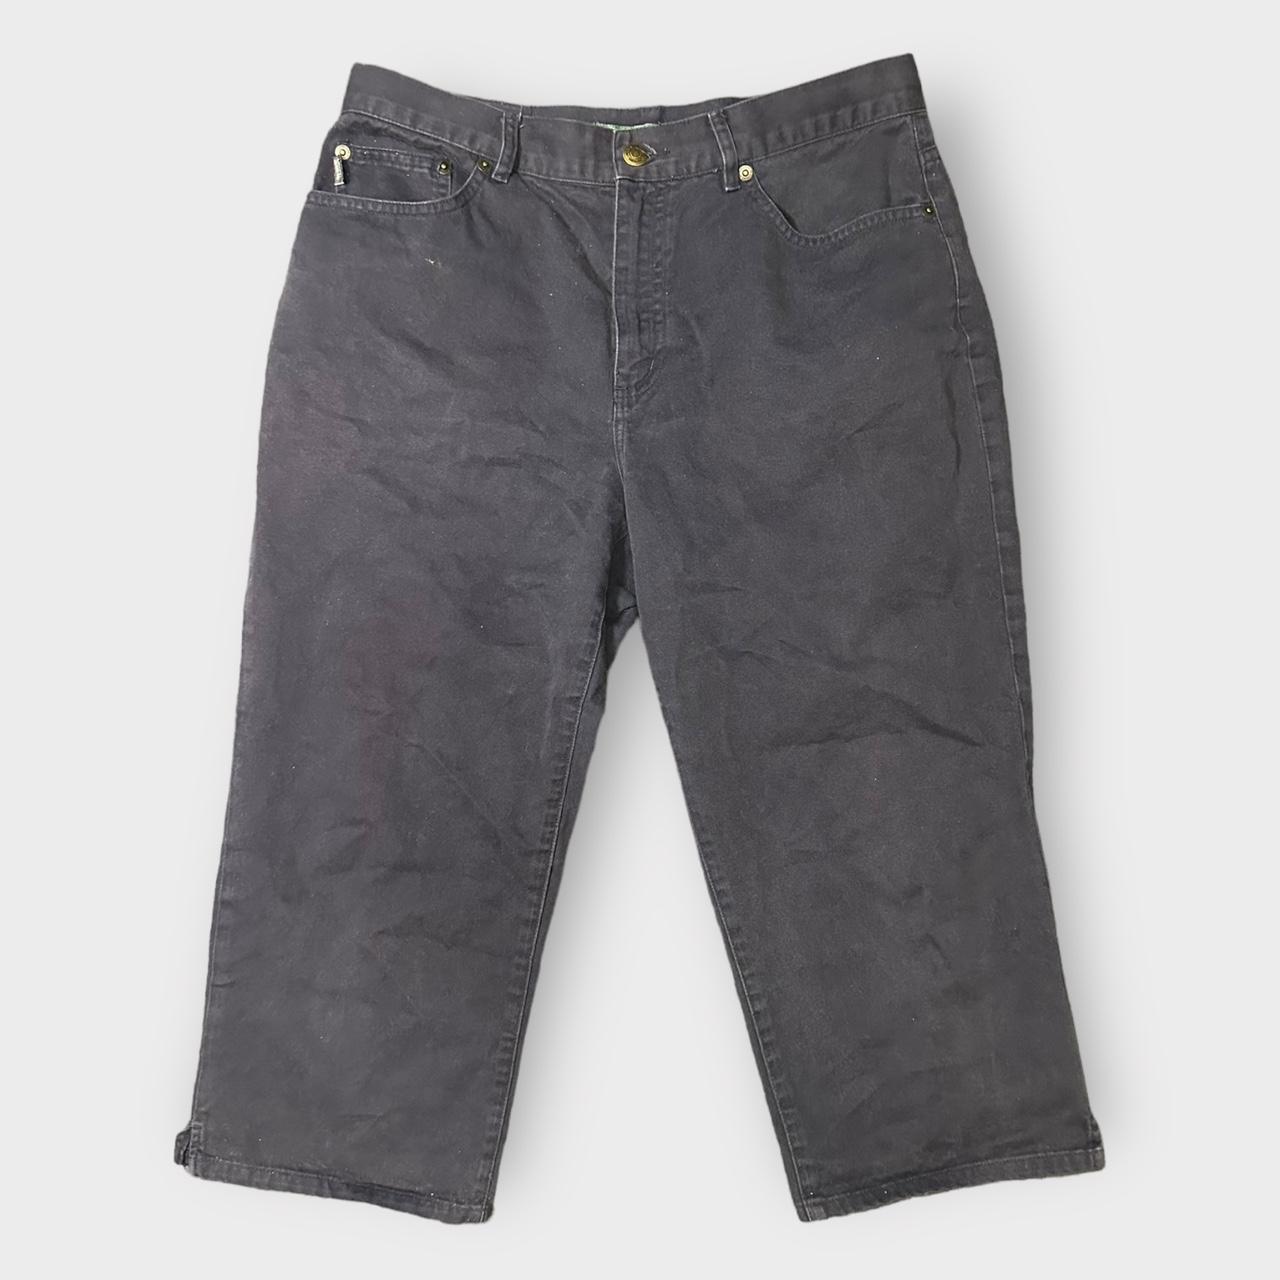 Ralph Lauren Women’s Pants, Size: 8, In excellent